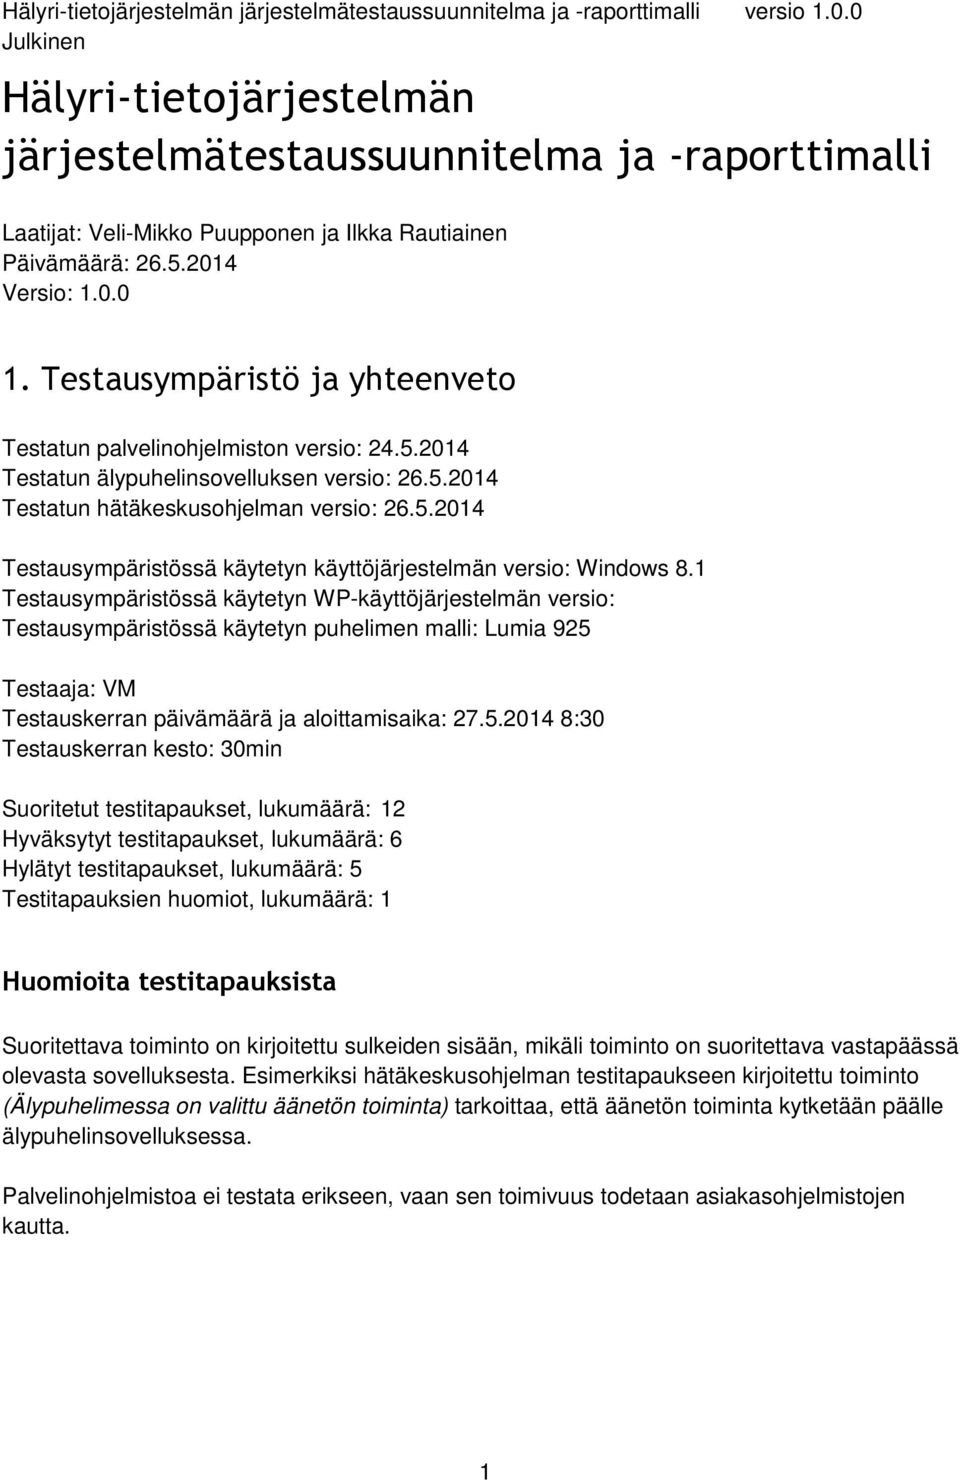 1 Testausympäristössä käytetyn WP-käyttöjärjestelmän versio: Testausympäristössä käytetyn puhelimen malli: Lumia 925 